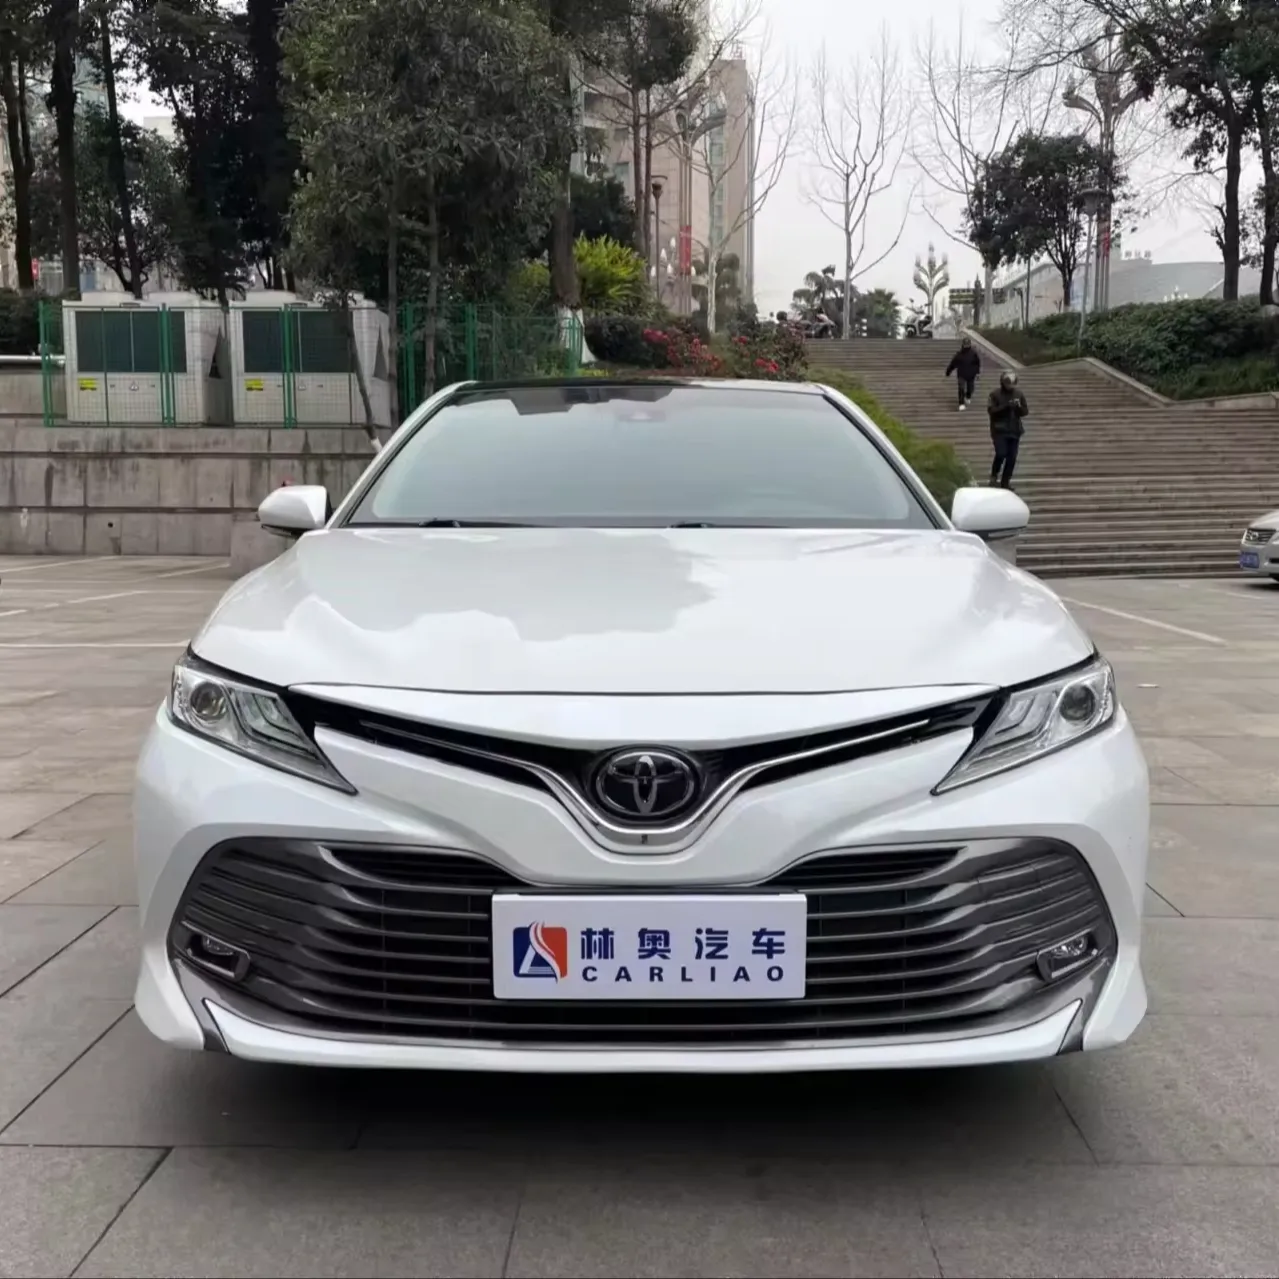 Auf Lager Toyota Camry gebrauchtes 2.5G Öl Auto günstige gebrauchte Autos Japan zum Verkauf Toyota Camry 2020